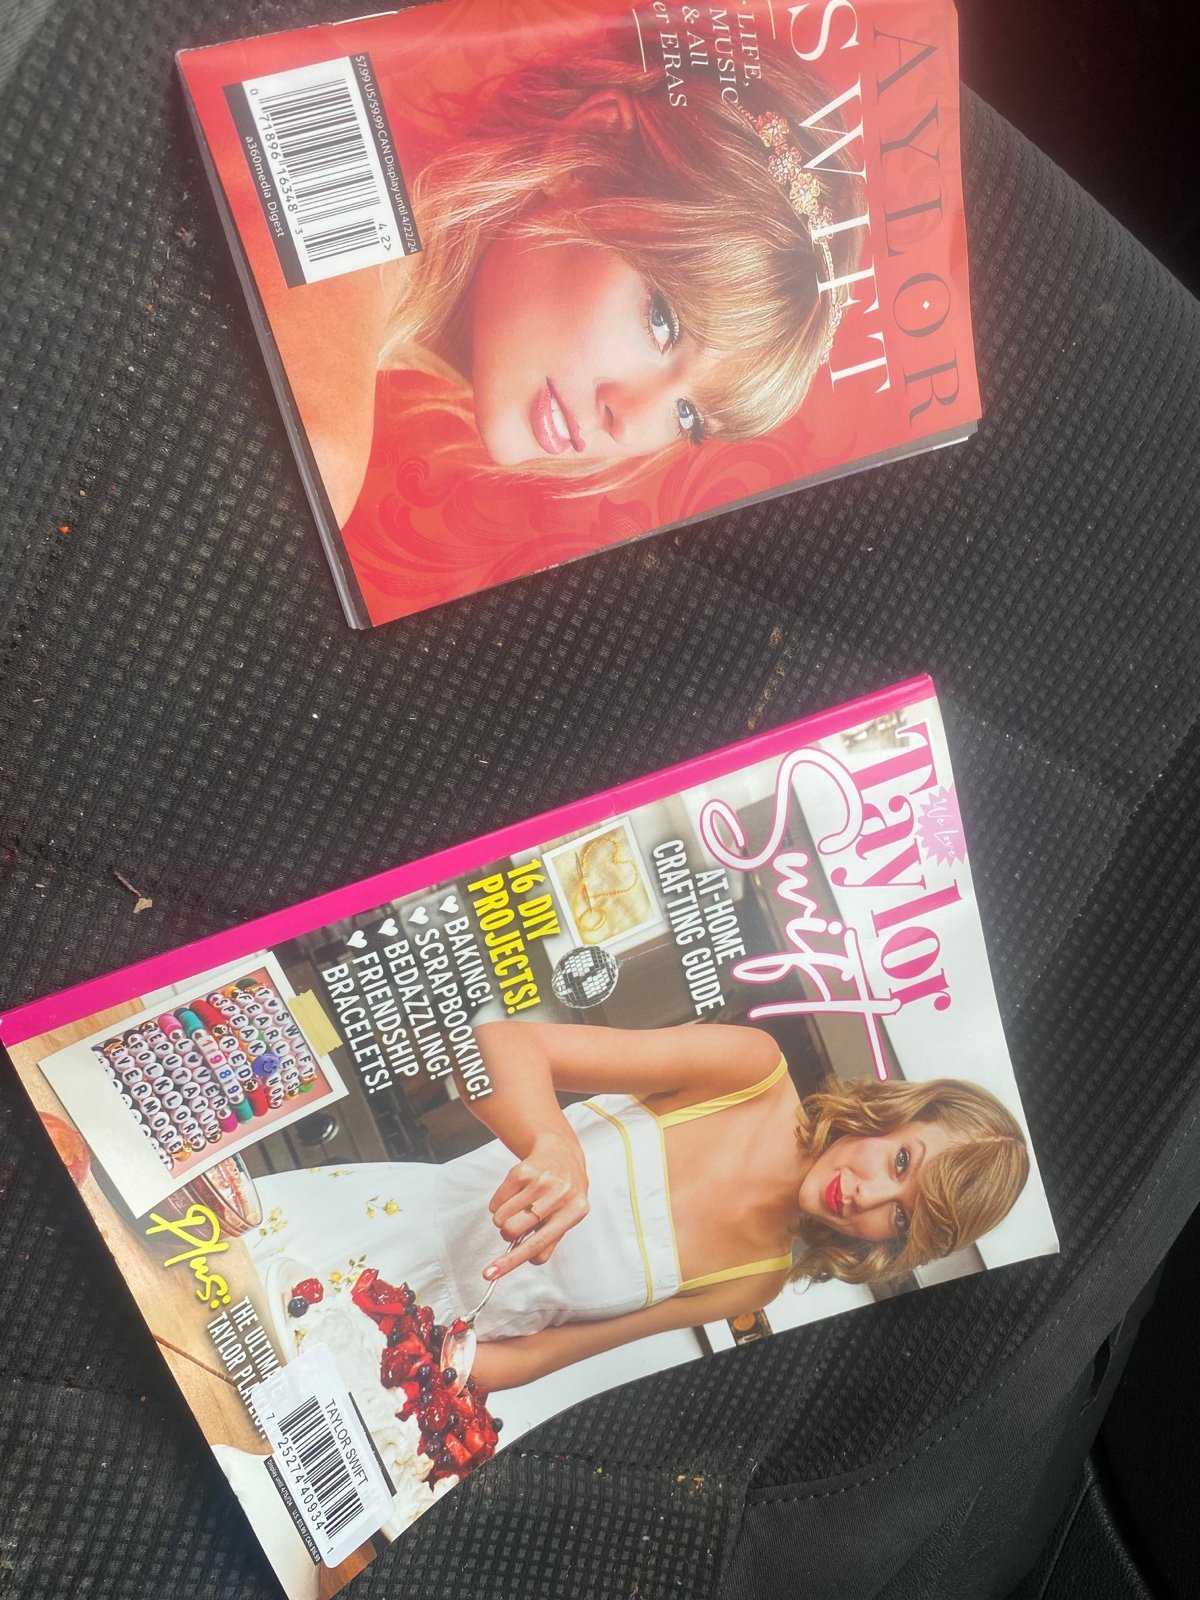 Taylor Swift magazines dmhfmKDUb